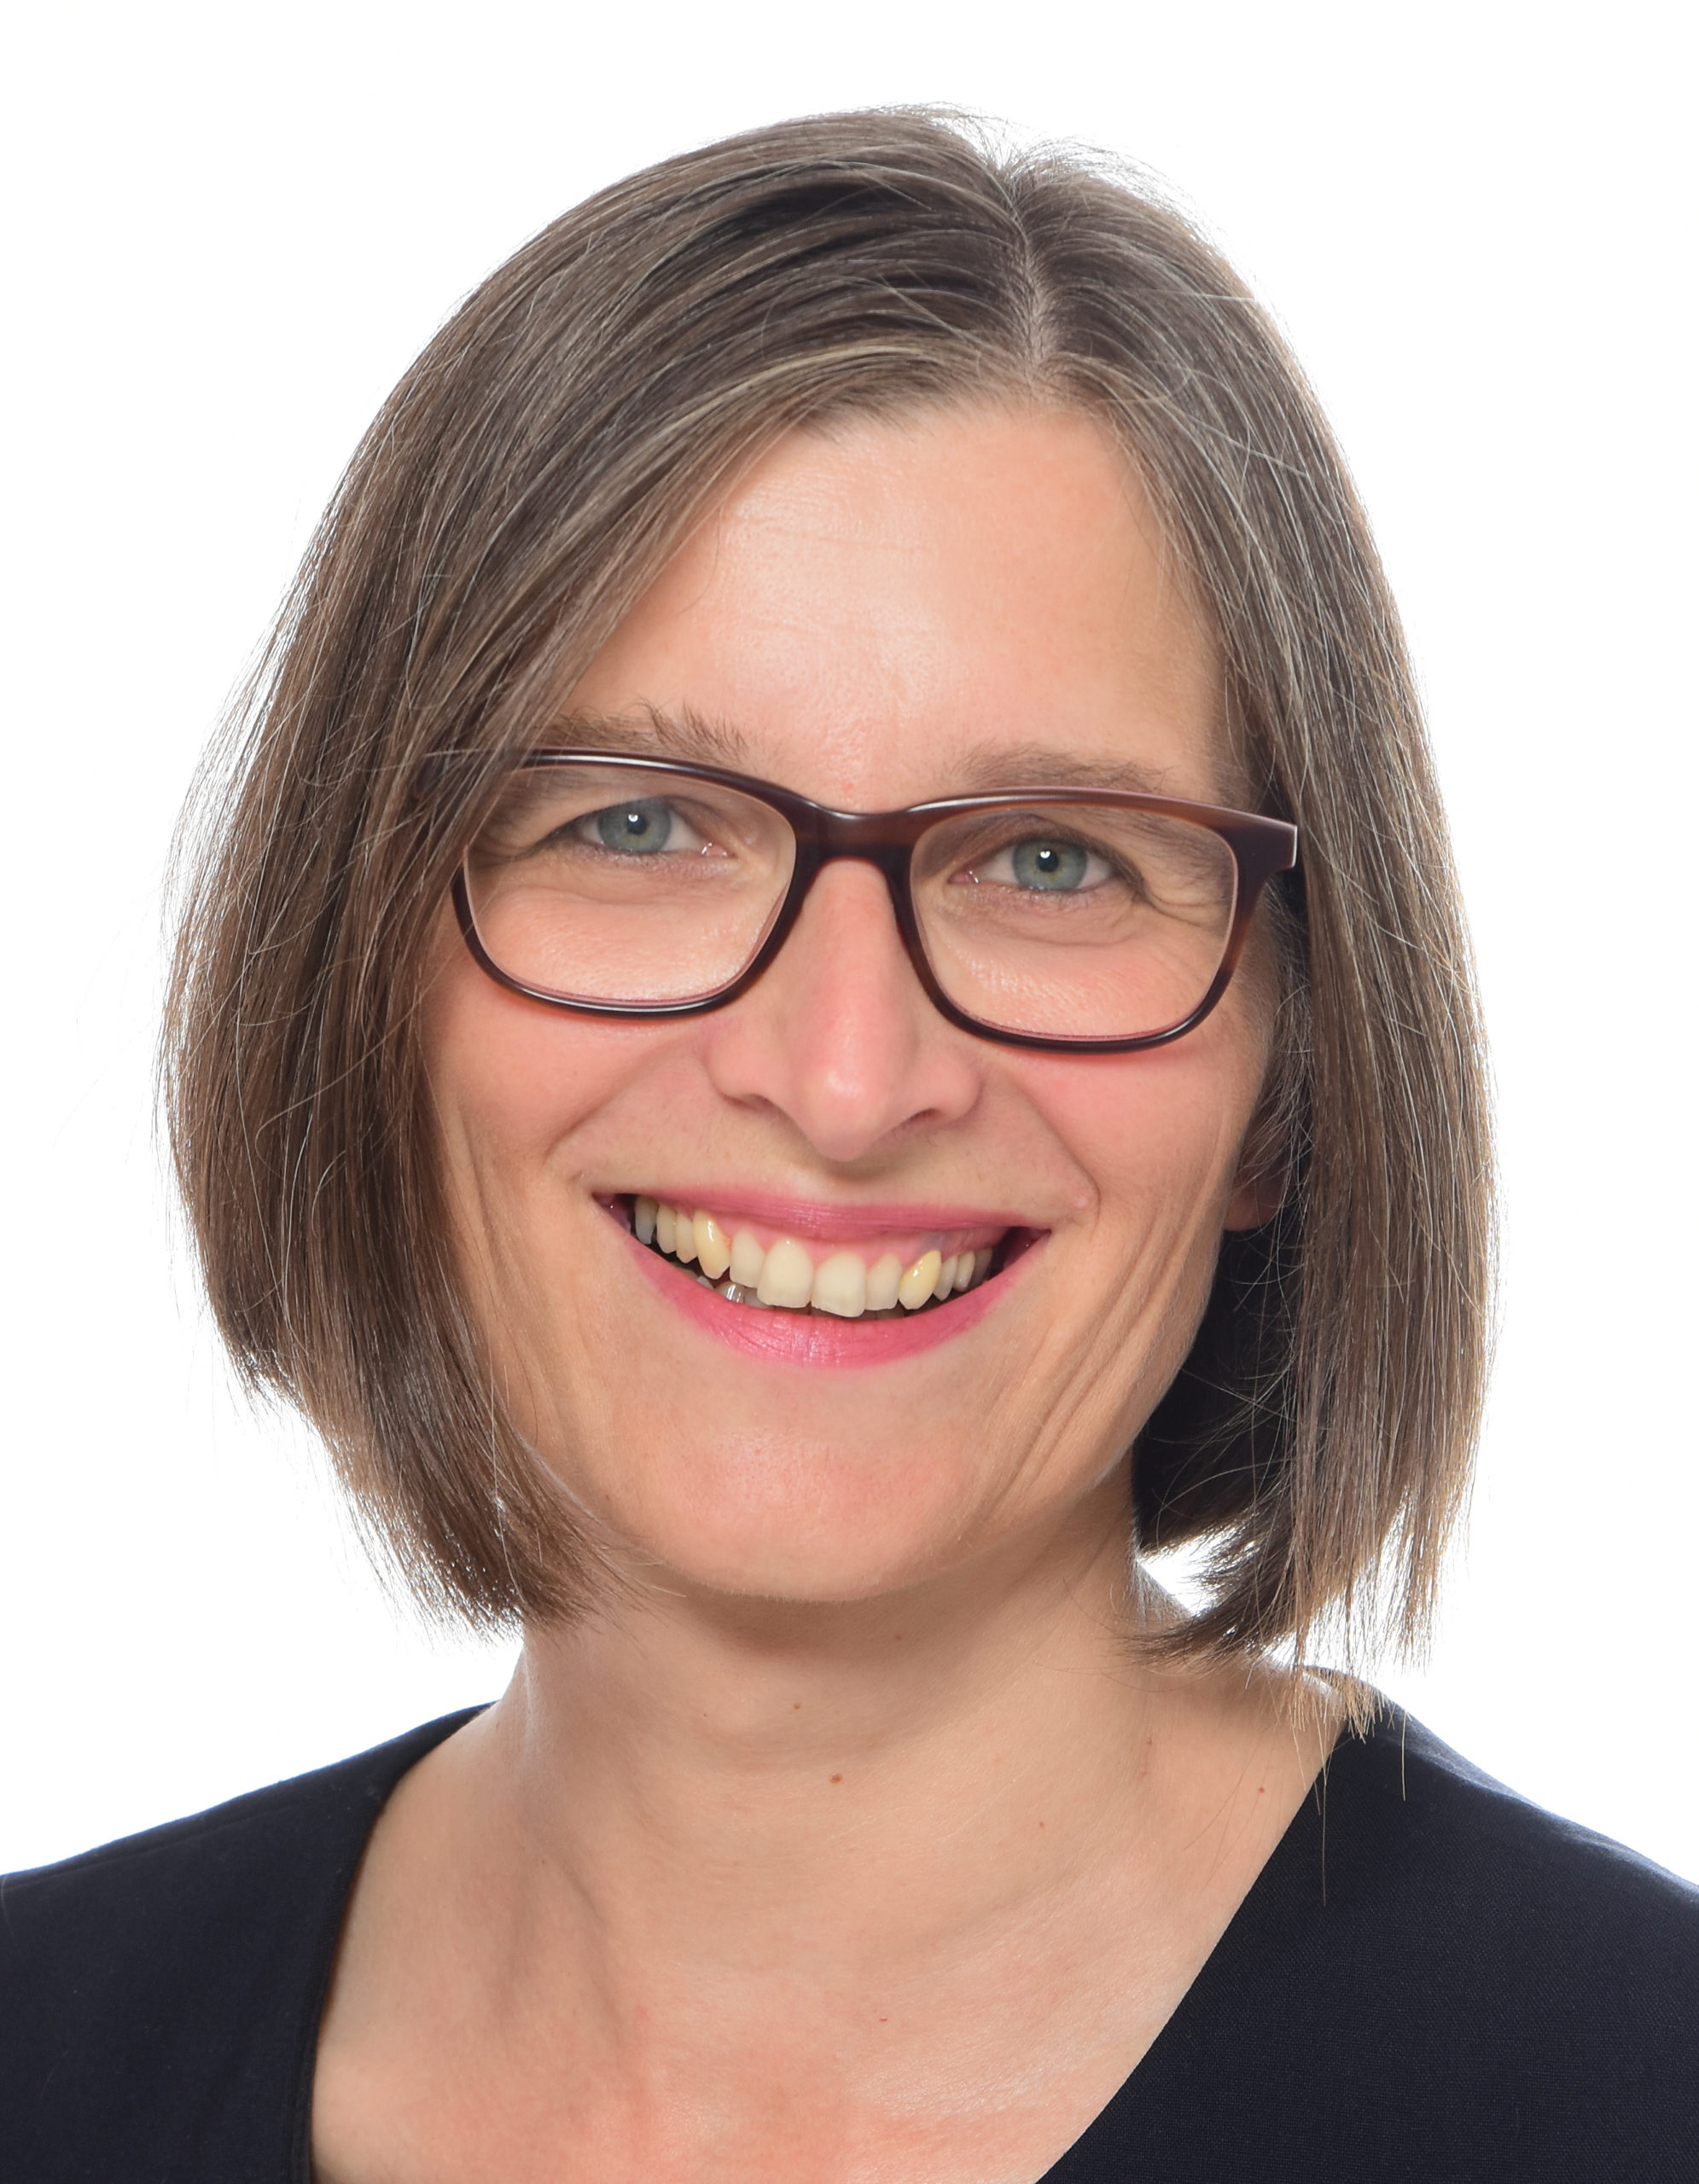 Prof. Dr. phil. Jeannette Bischkopf